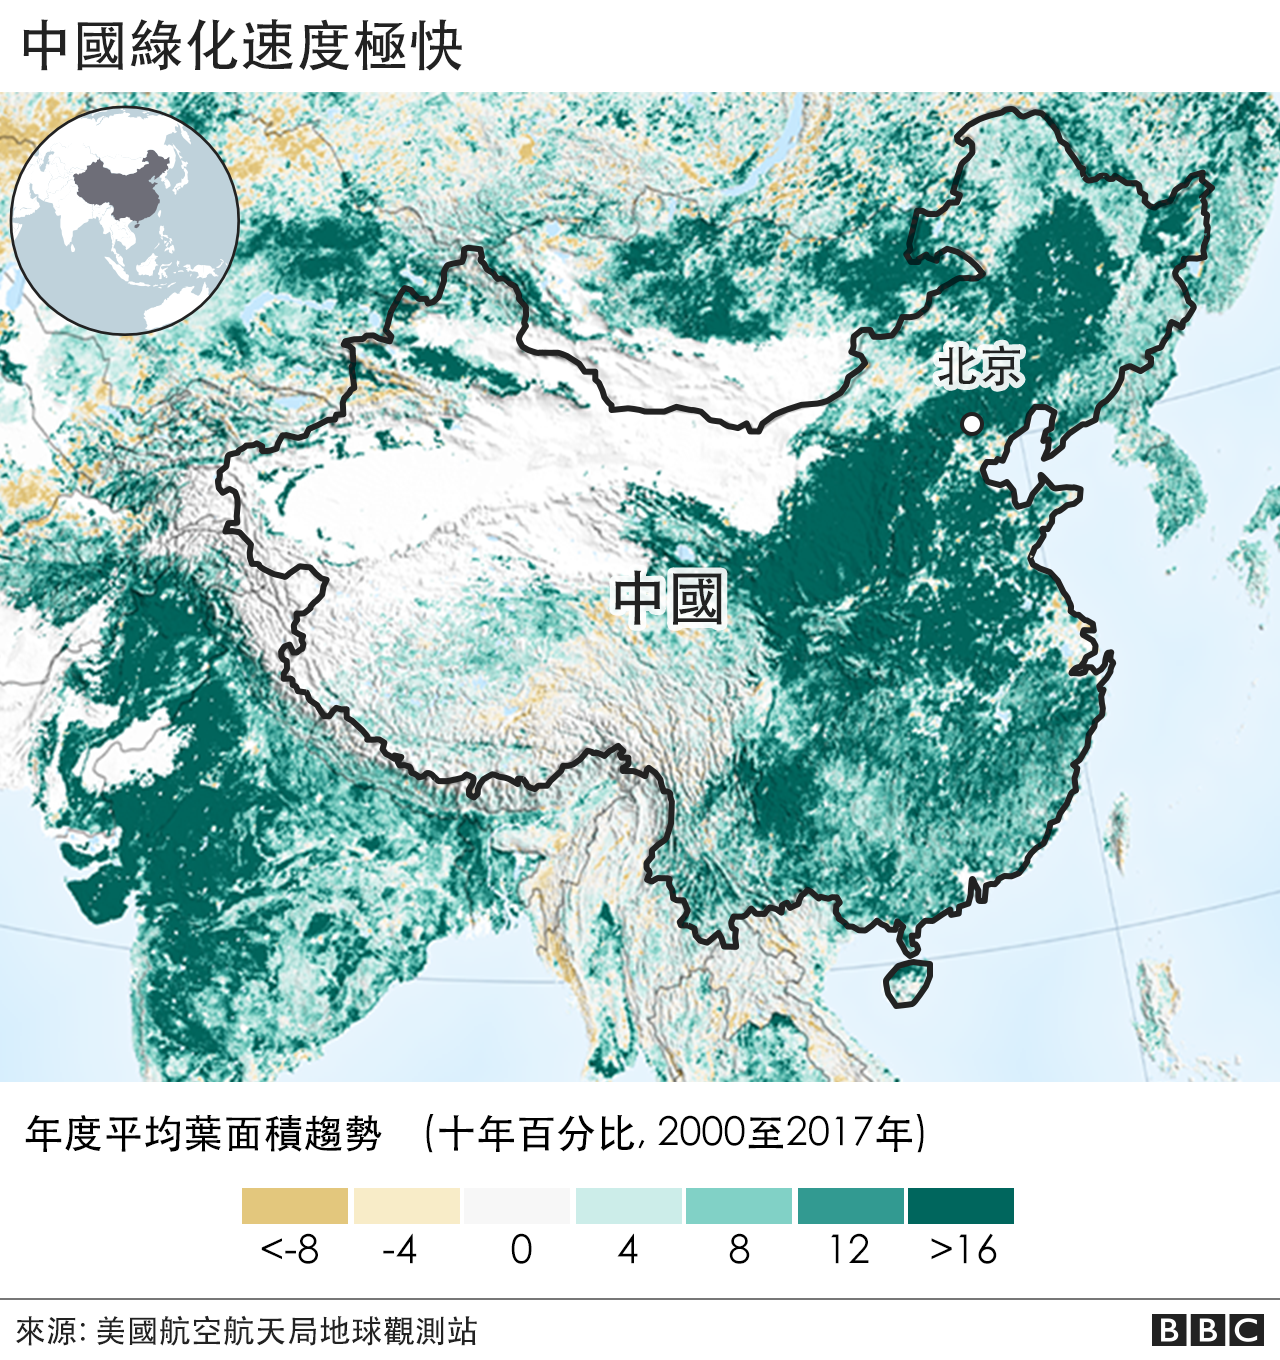 China's greening speed